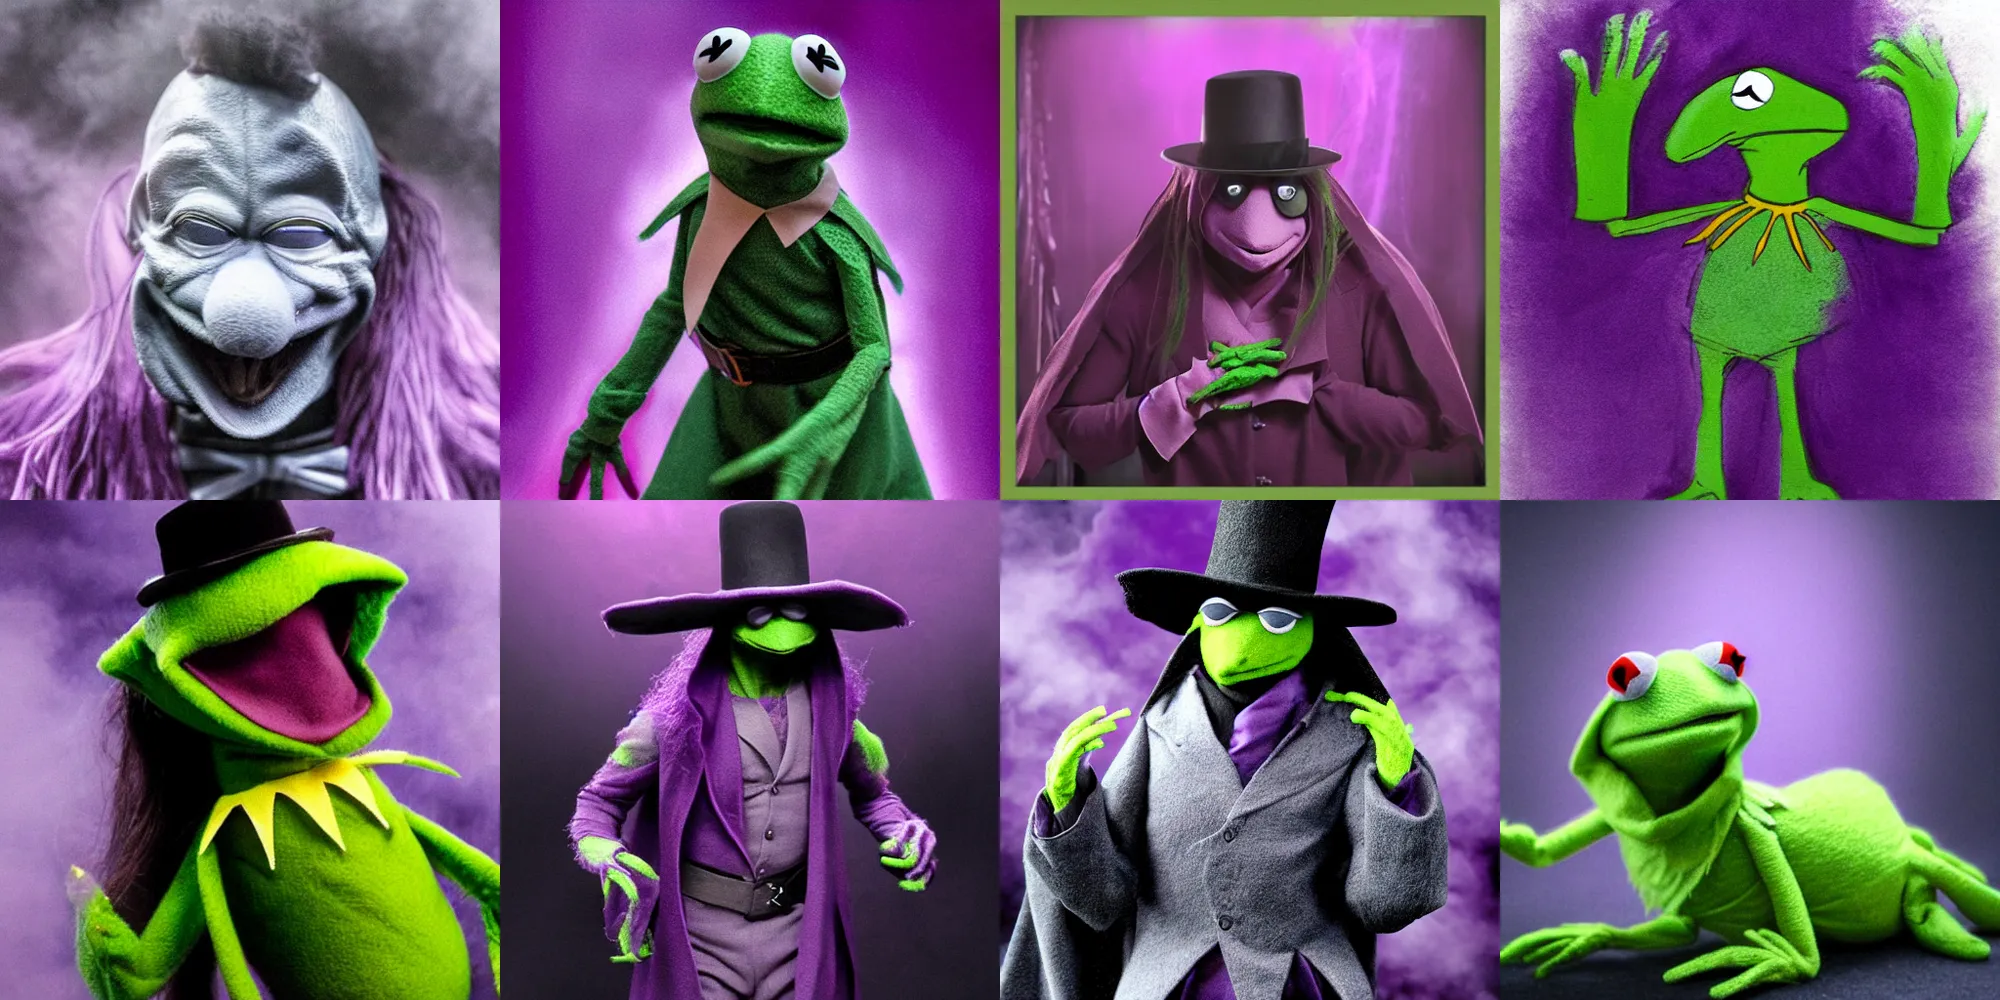 Prompt: Kermit dressed as The Undertaker, detailed, hyper realistic, purple fog, atmospheric